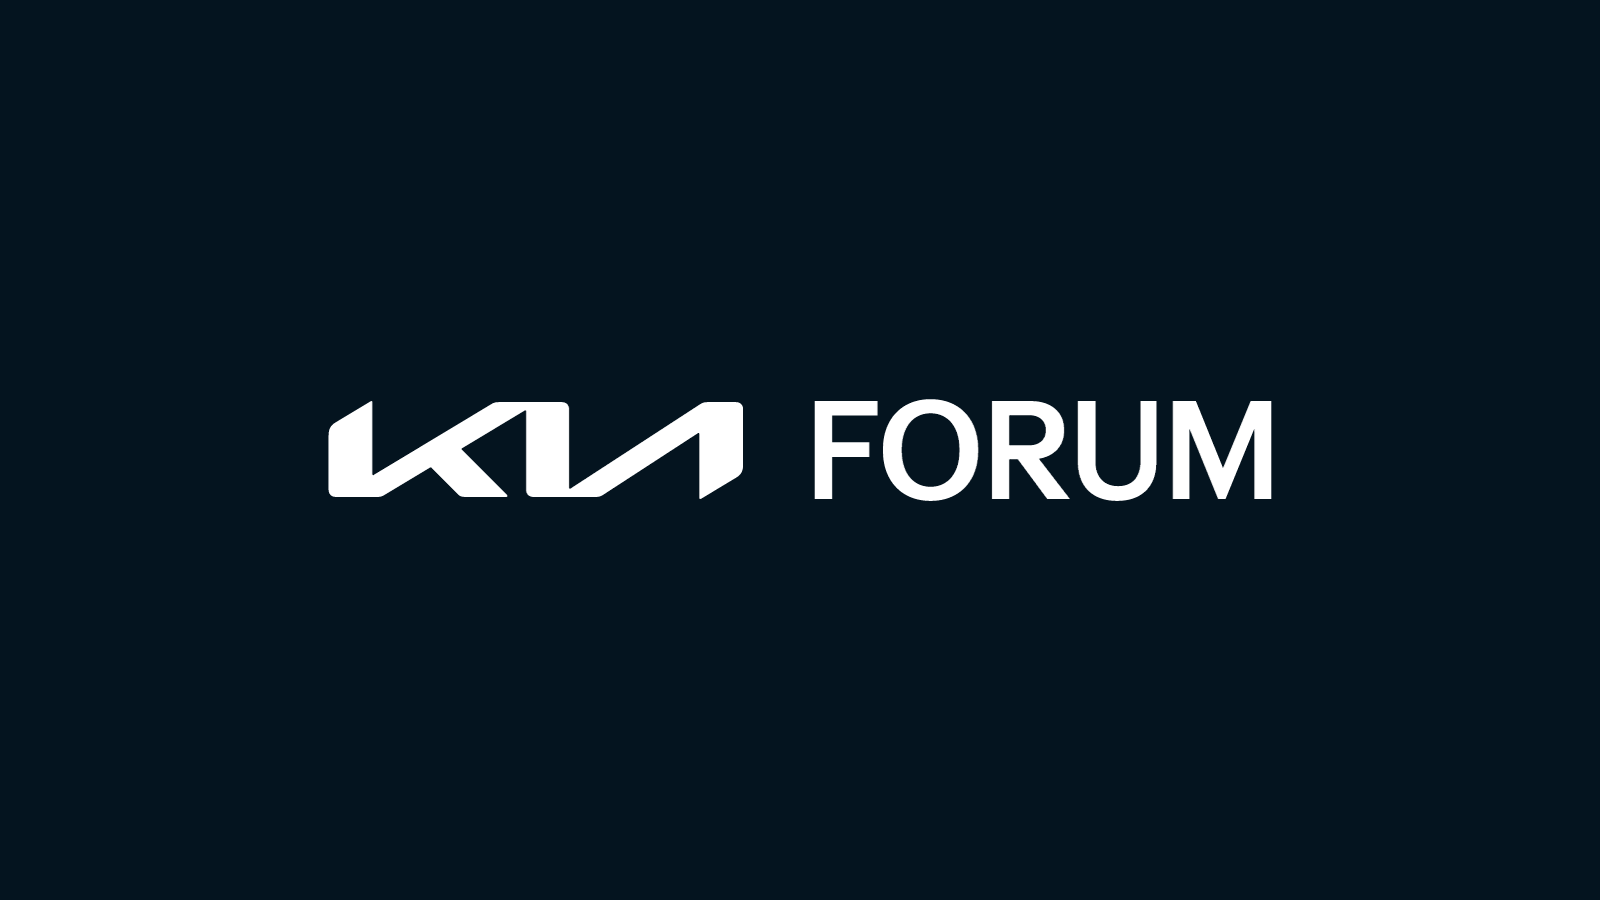 About the Kia Forum